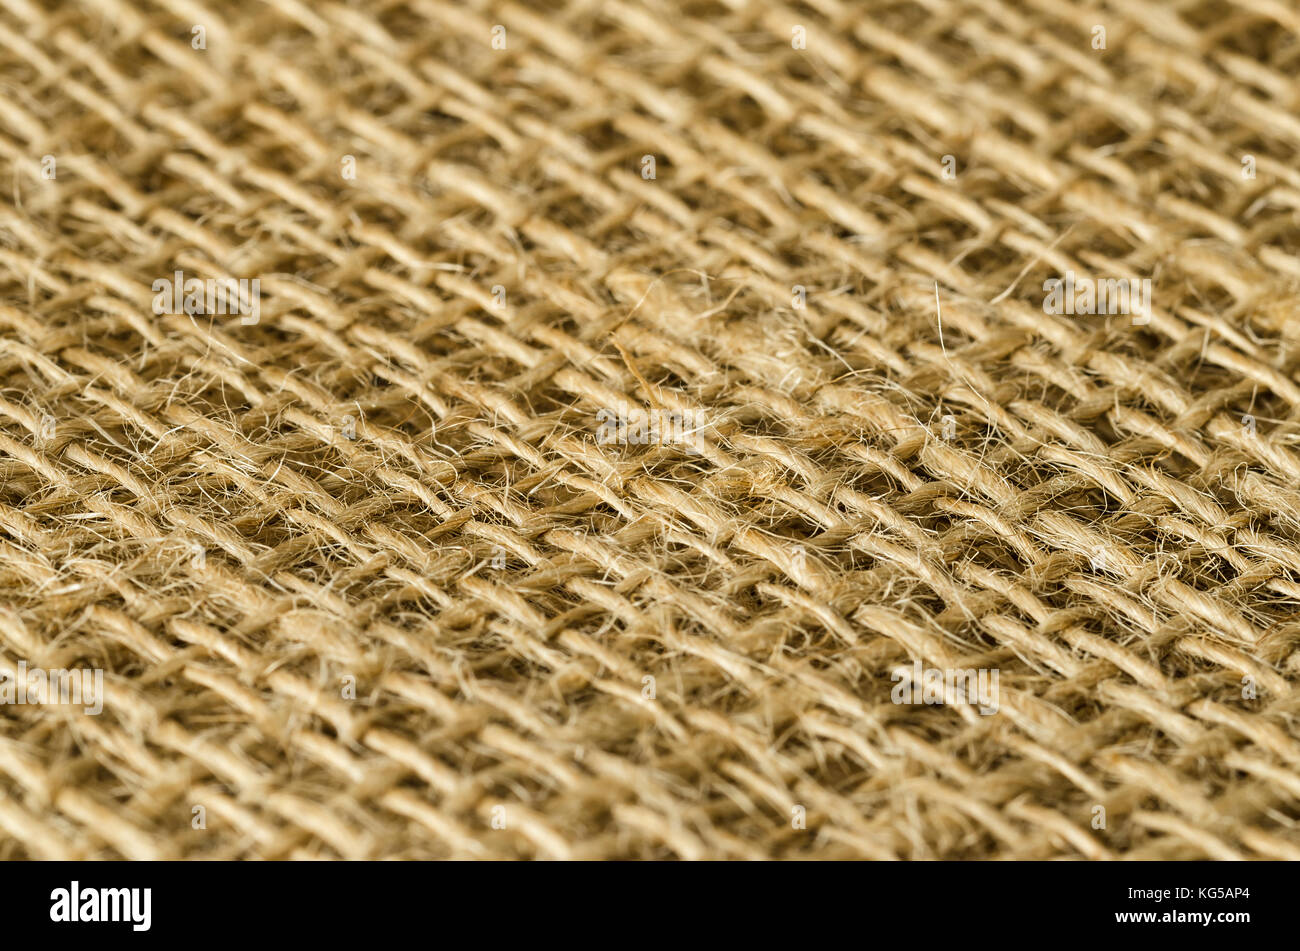 Jutegewebe Schichten Blick diagonal. Grobe braun Threads zu grob textile Gewebe, für Taschen verwendet. Auch als raw oder goldene Faser. Foto. Stockfoto